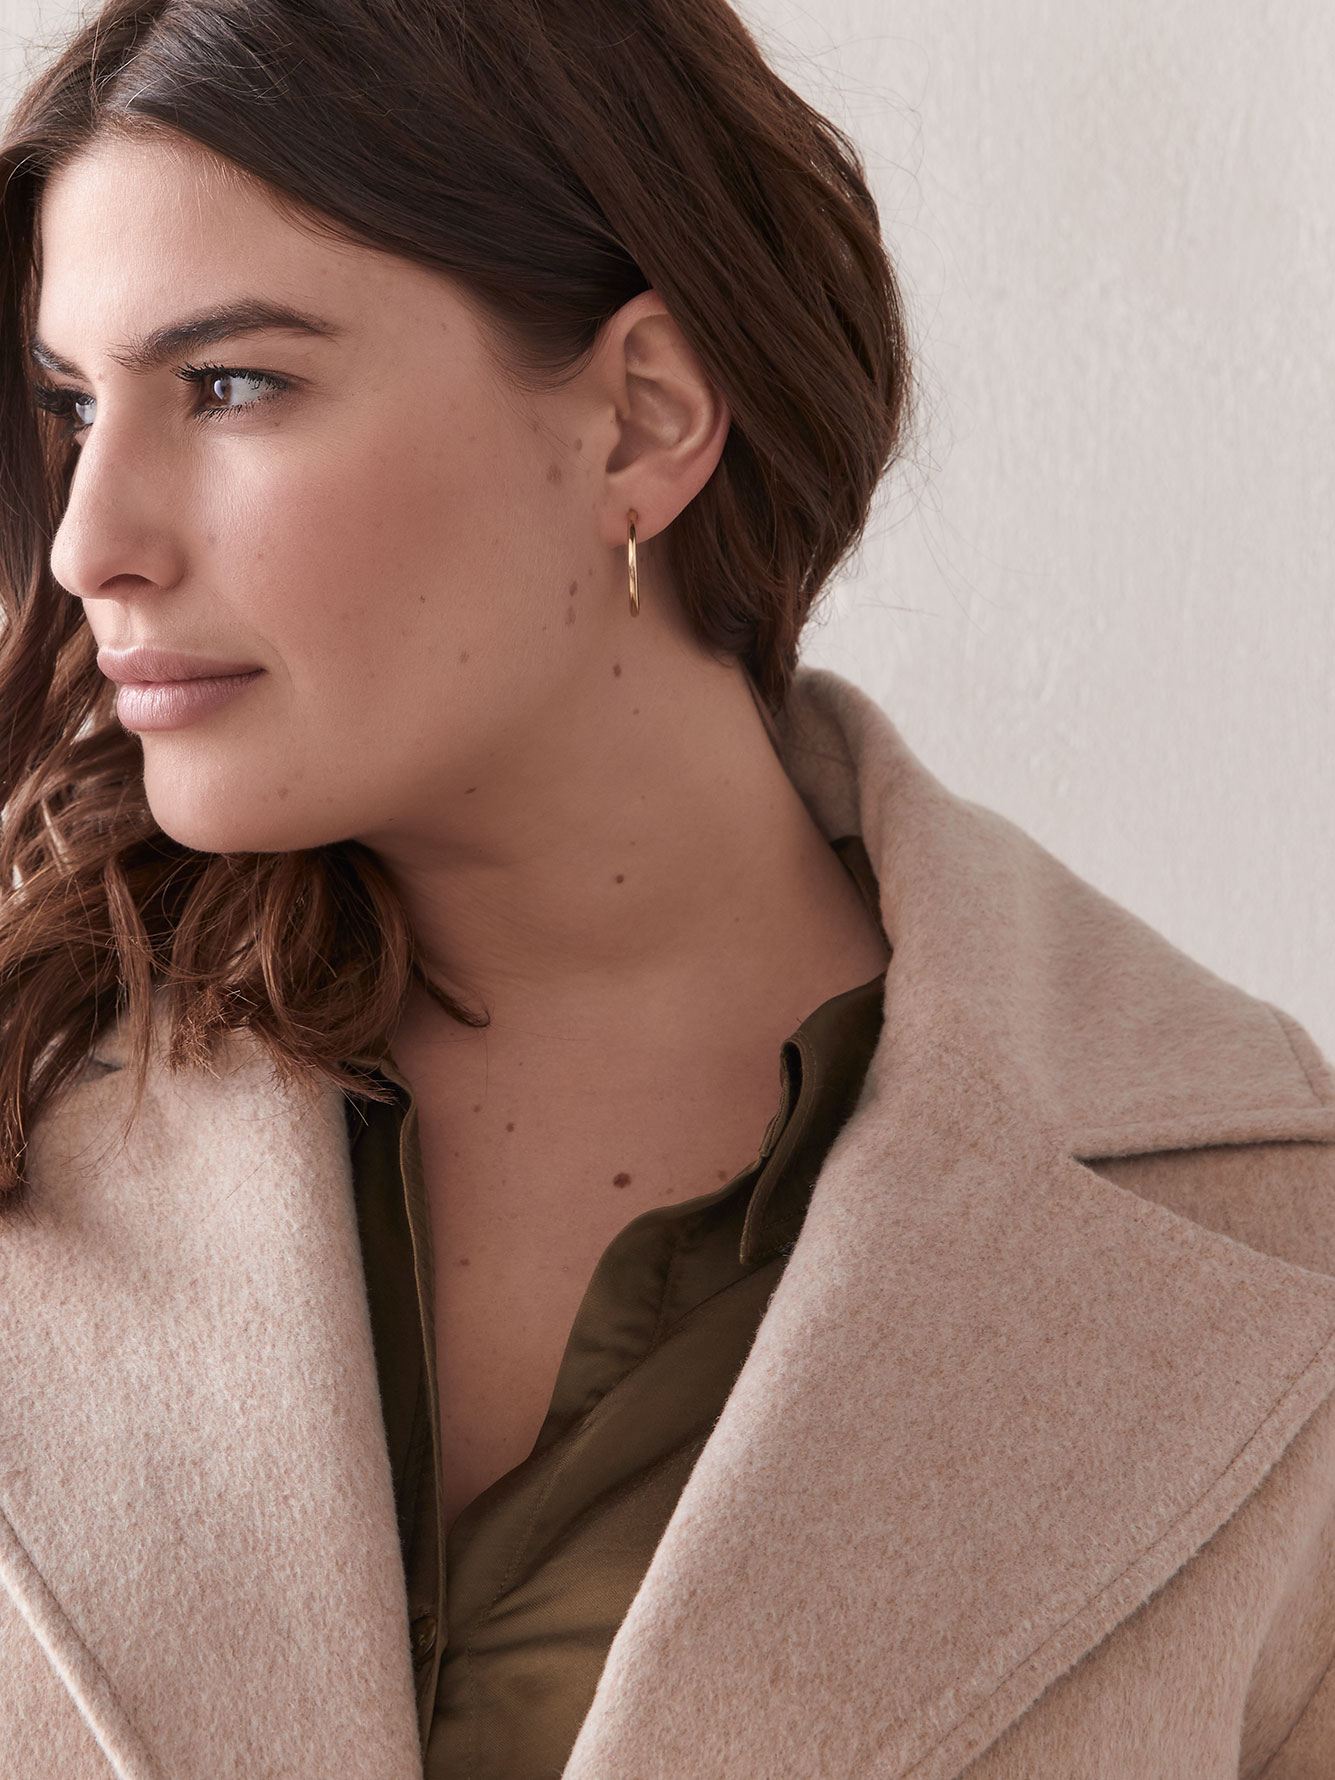 Belted Wool-Blend Coat - Addition Elle